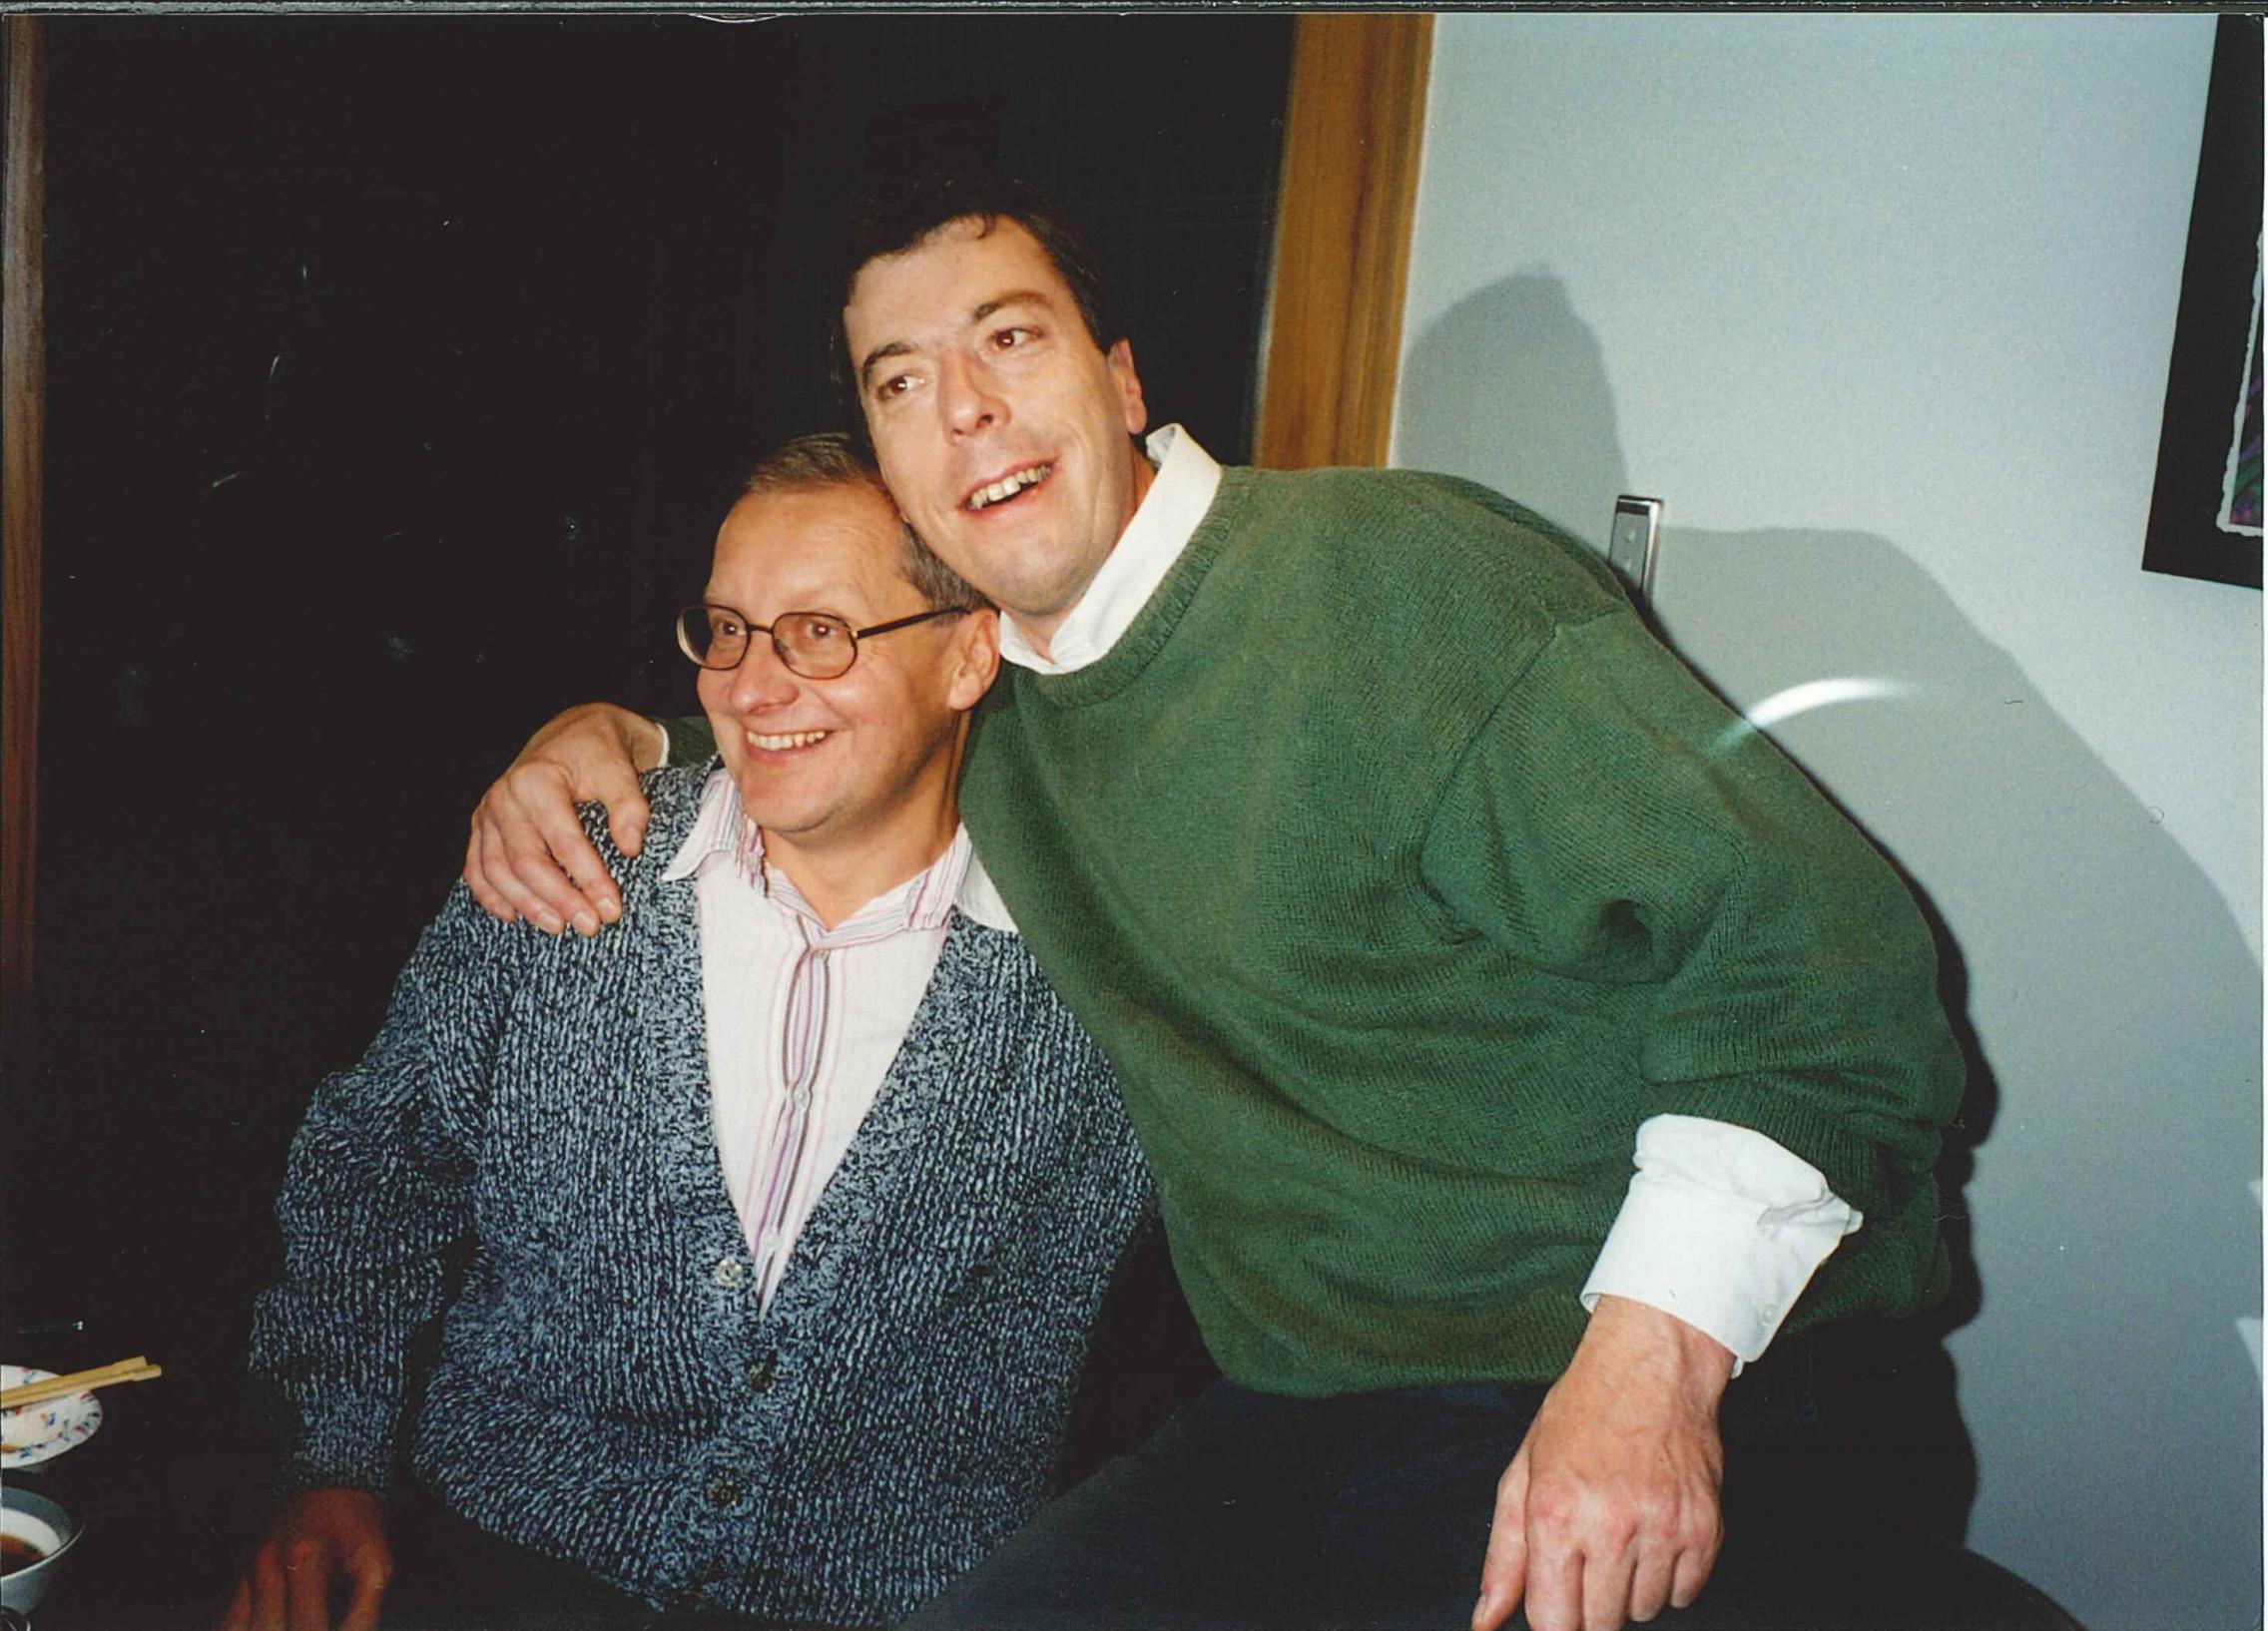 Wojciech Chojnacki with Mike Brooks